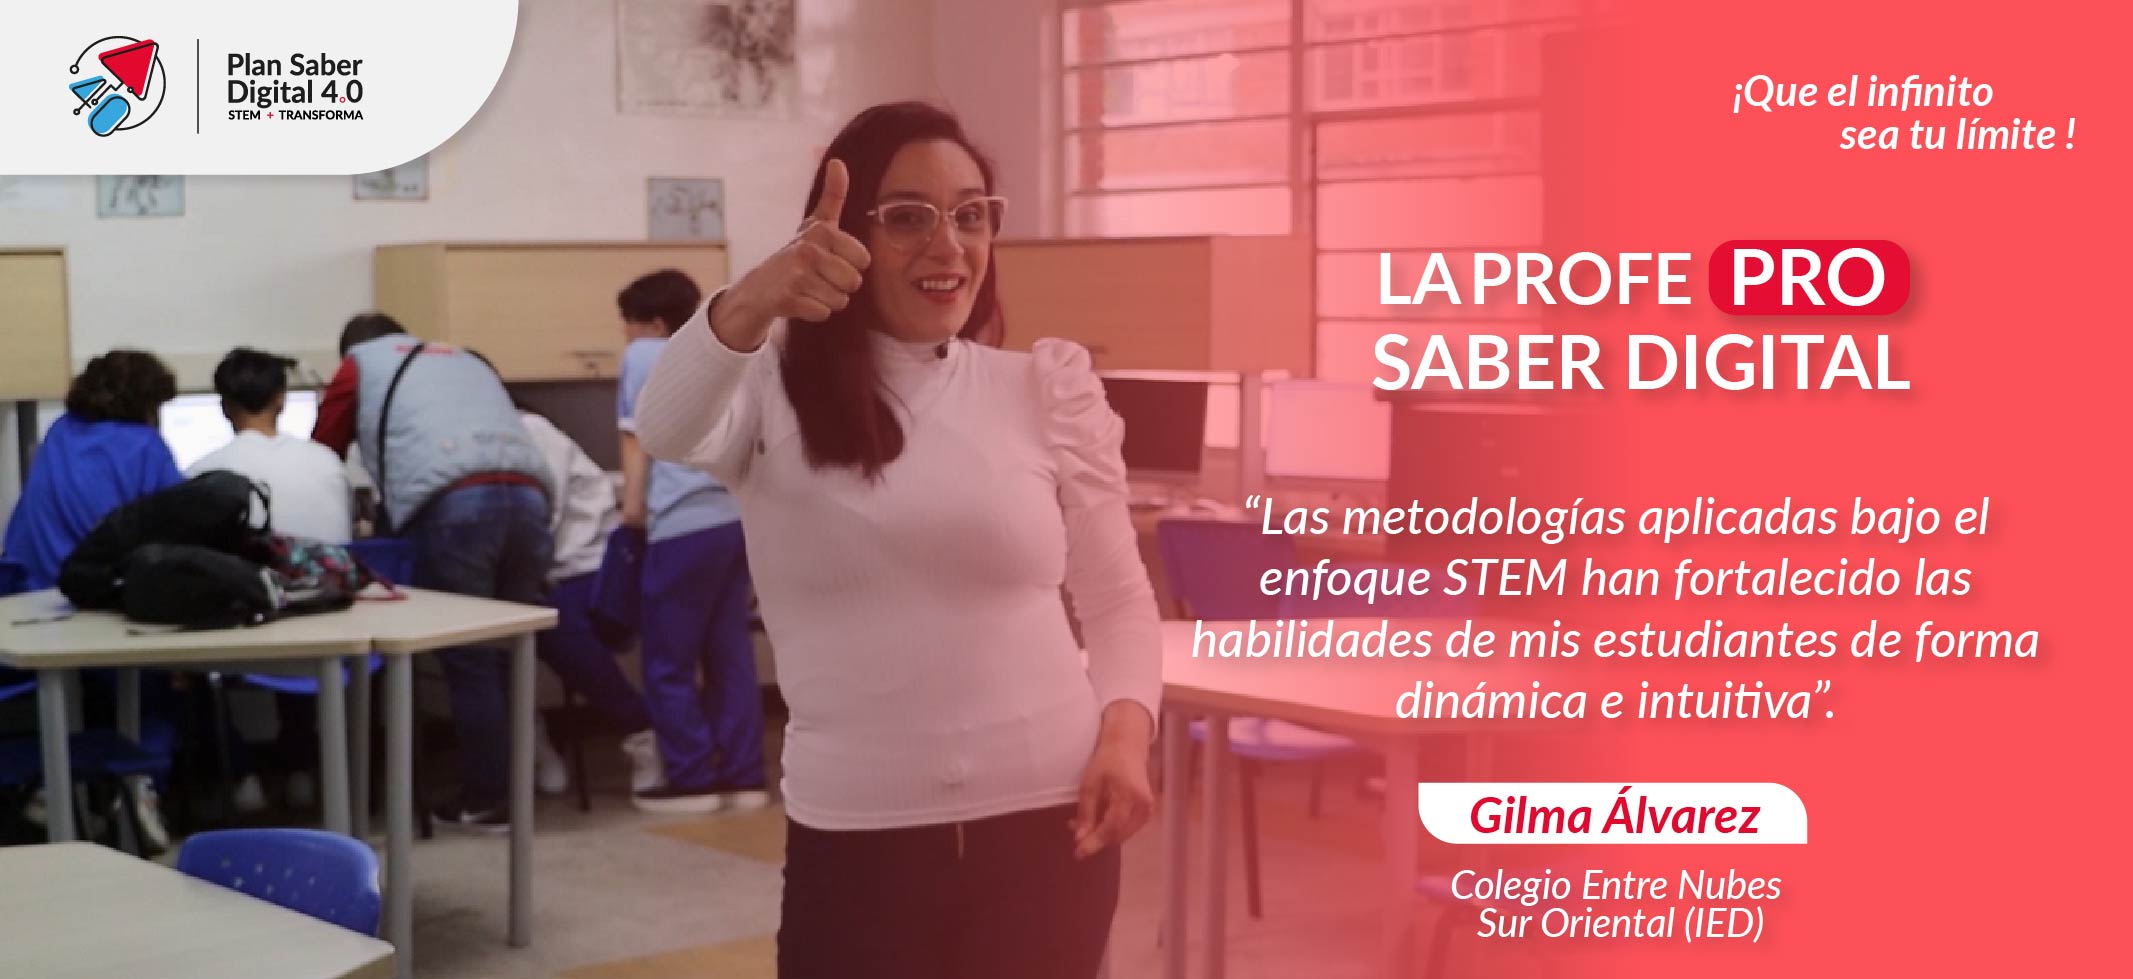 La Profe PRO Saber Digital - Gilma Álvarez